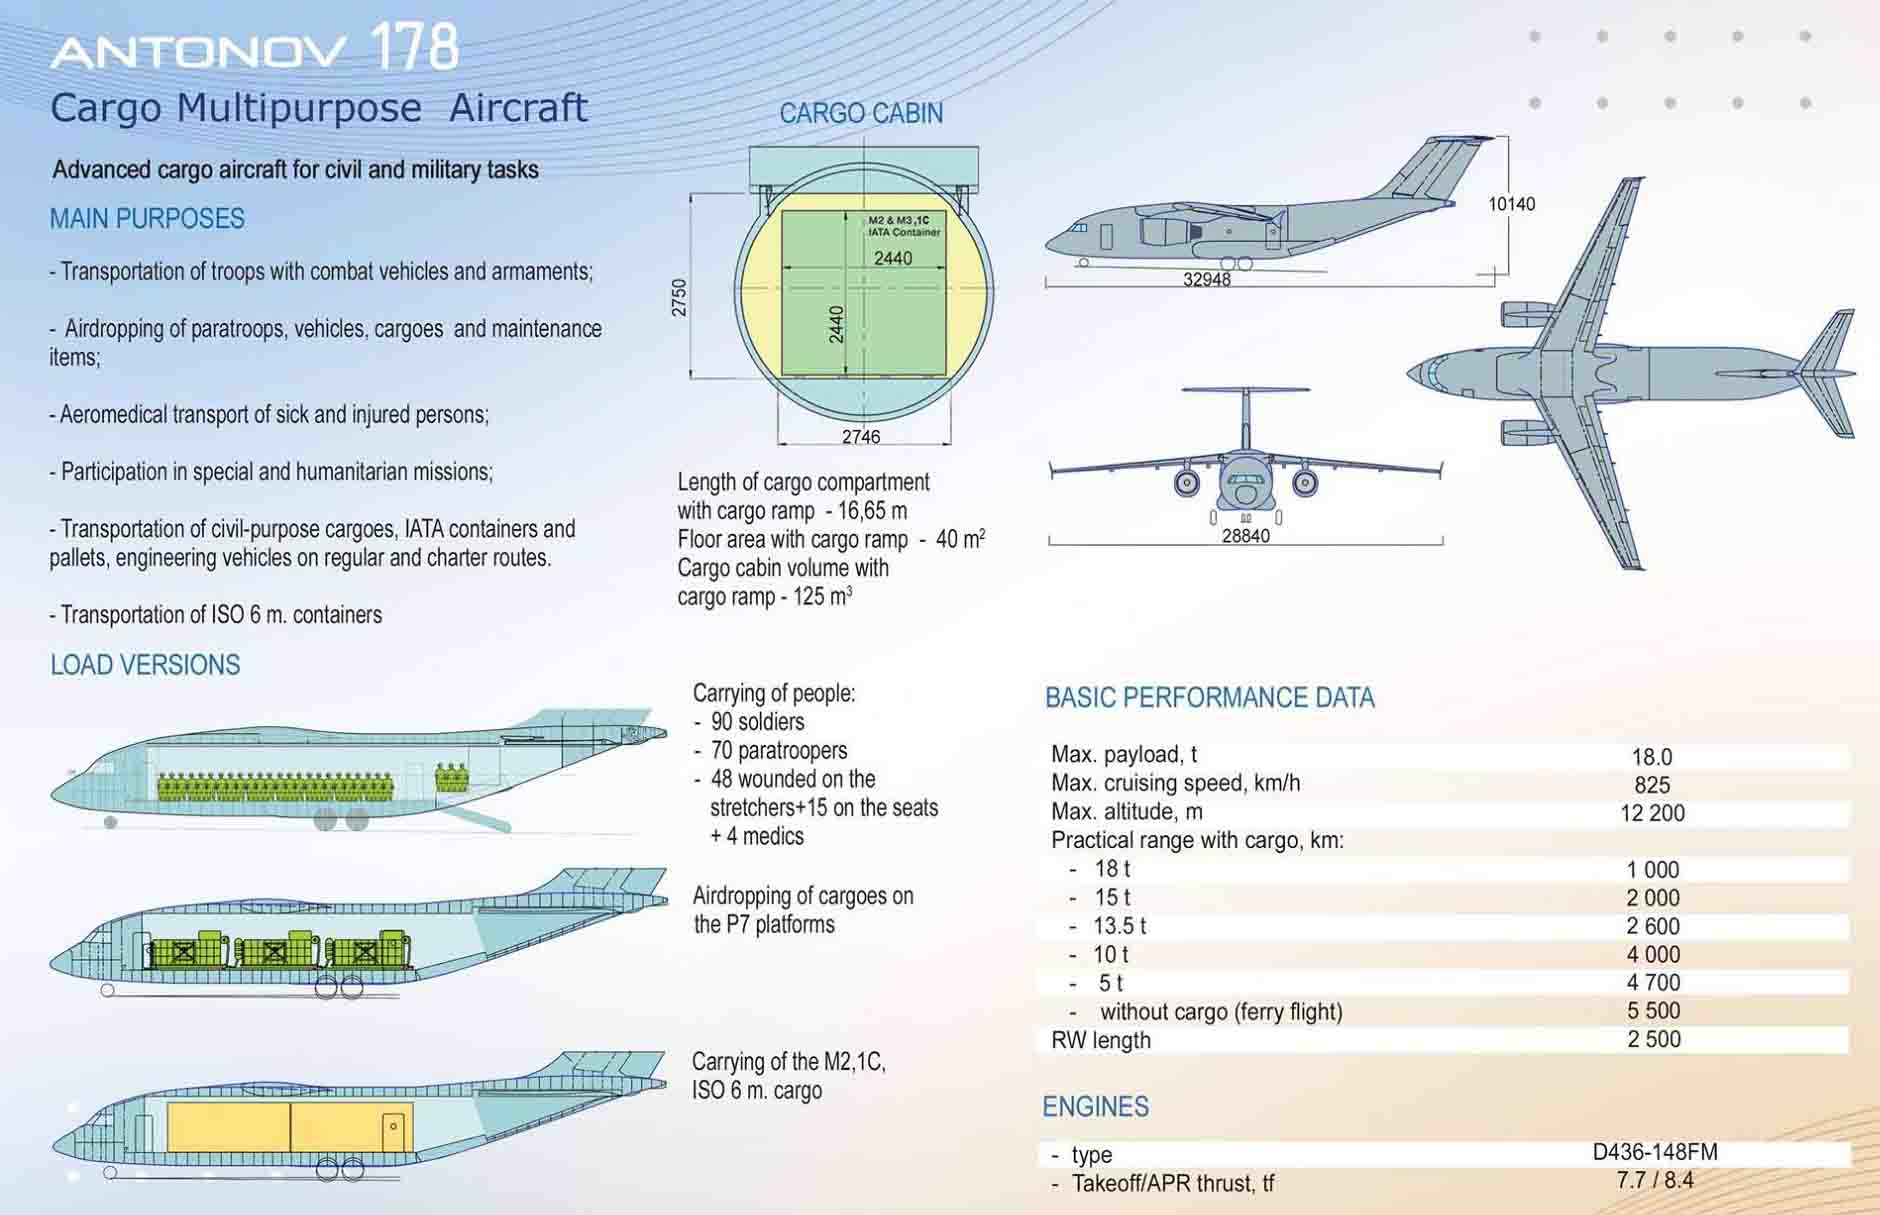 Технические характеристики самолета «руслан» ан-124: грузоподъемность, вес, размеры